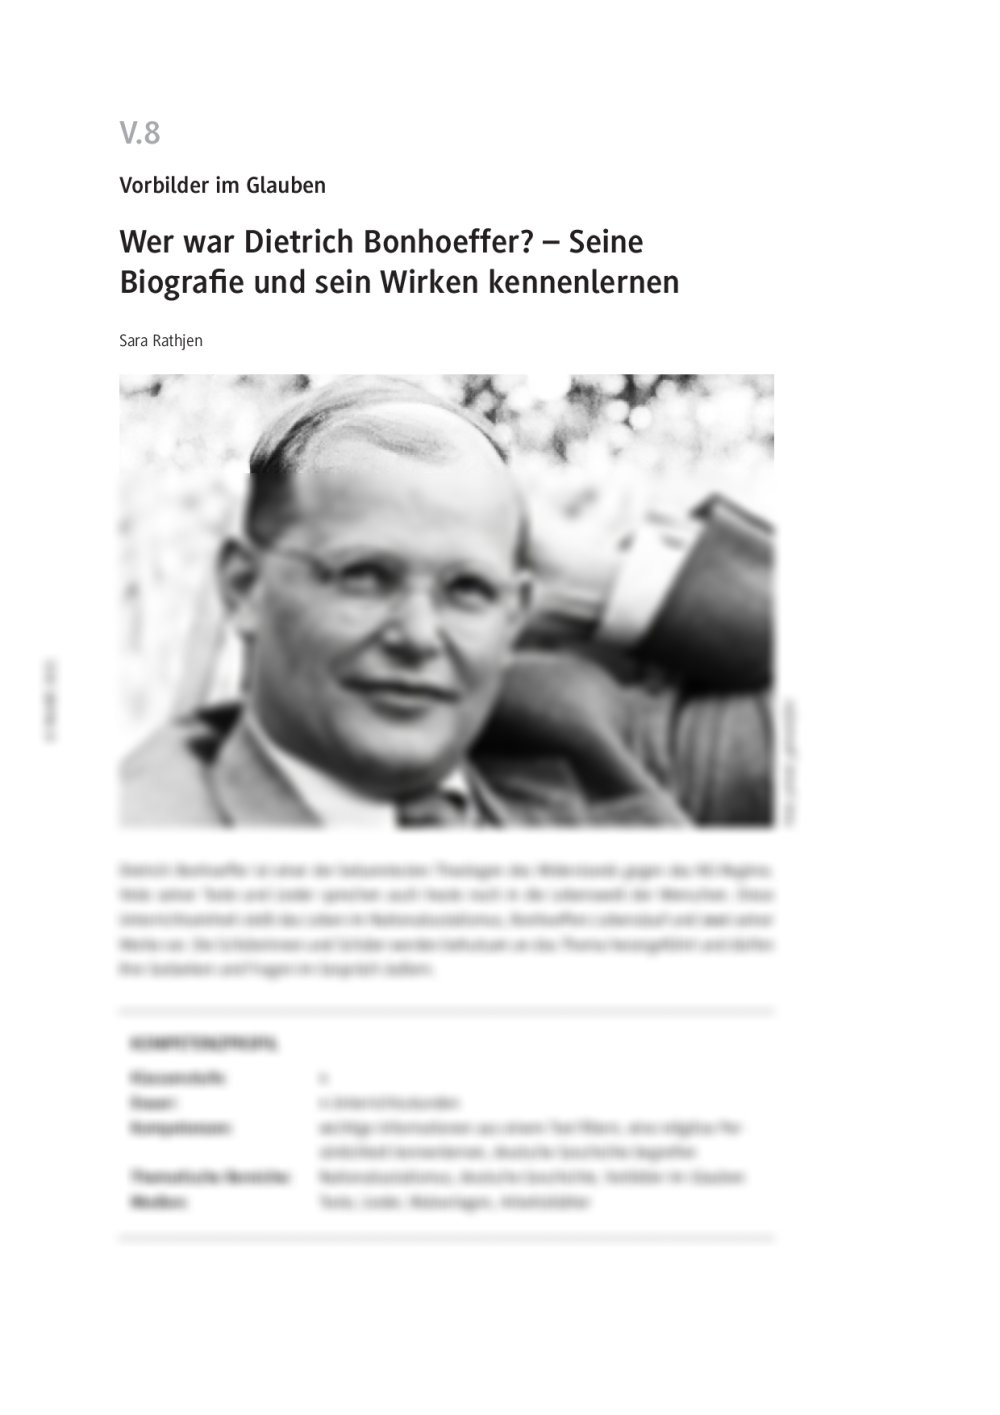 Wer war Dietrich Bonhoeffer? - Seite 1